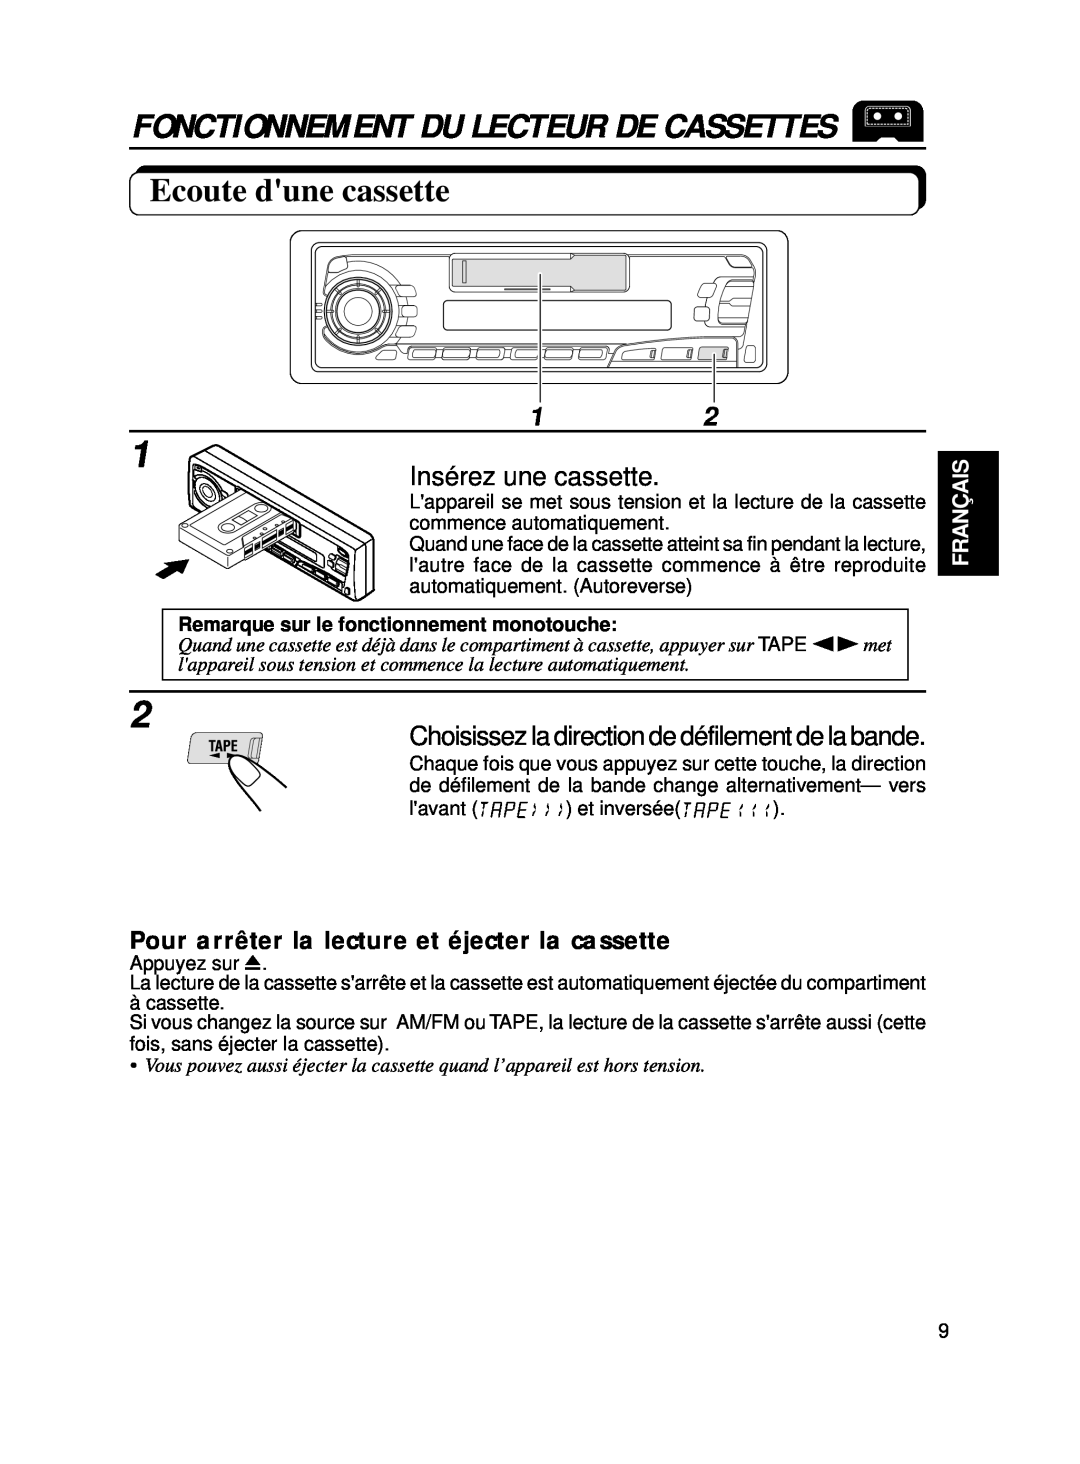 JVC KS-FX250 manual Ecoute dune cassette, Insérez une cassette, Choisissez la direction de défilement de la bande, Français 